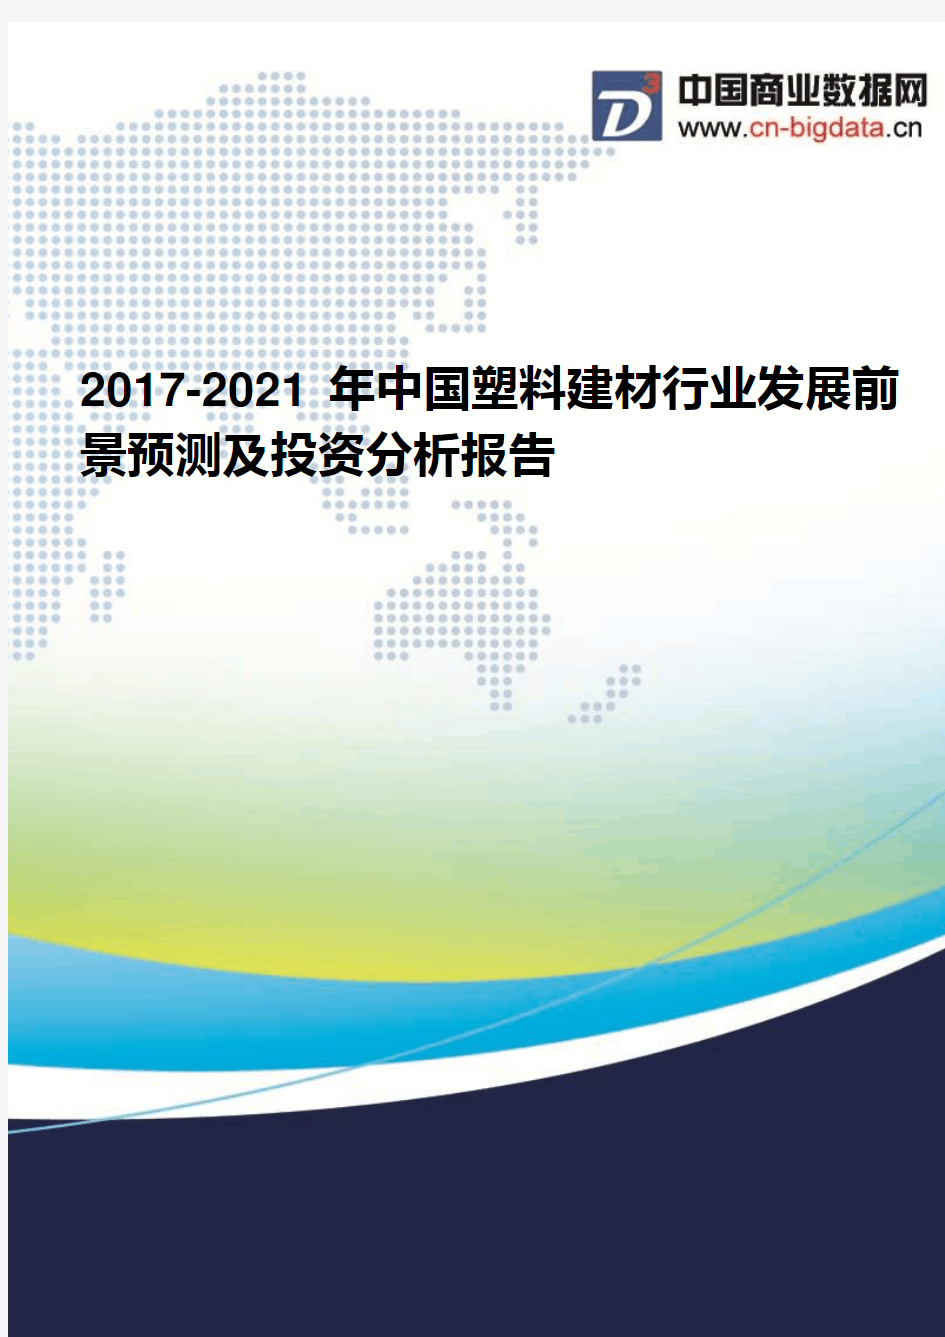 2017-2021年中国塑料建材行业发展前景预测及投资分析报告(2017版目录)